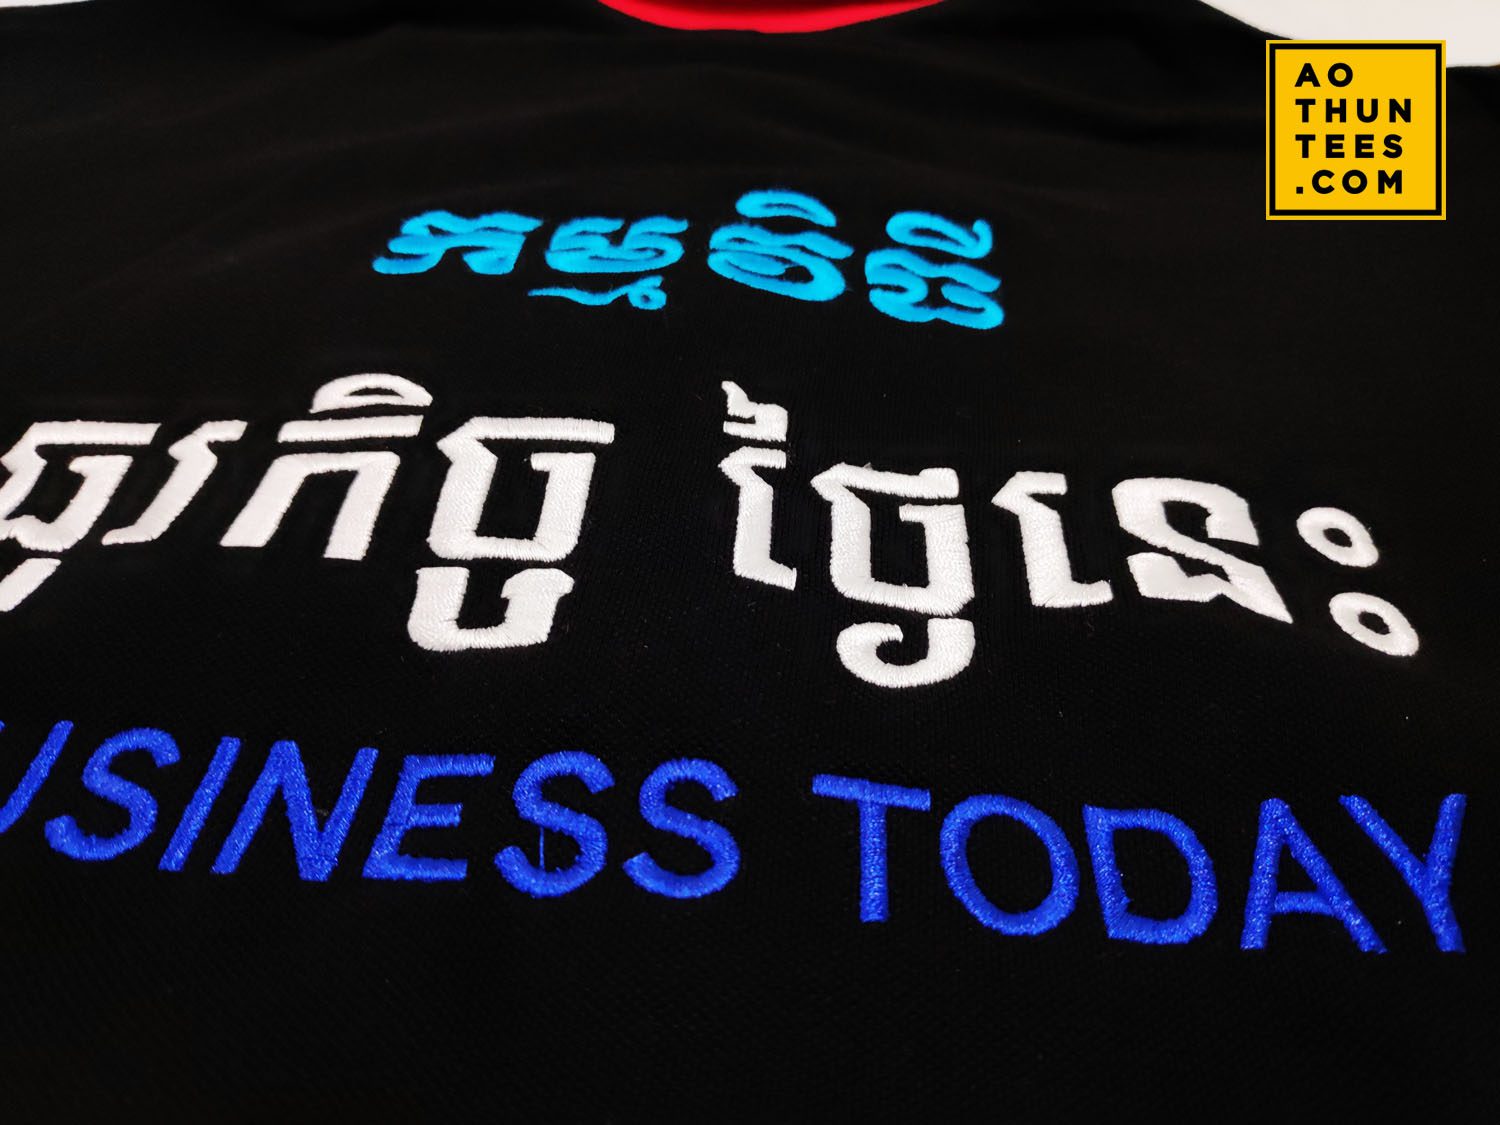 Áo thun đồng phục Cambodian Advertising Enterprise - 061. Vanessa Cambodian Advertising Enterprise Mau 1 1a